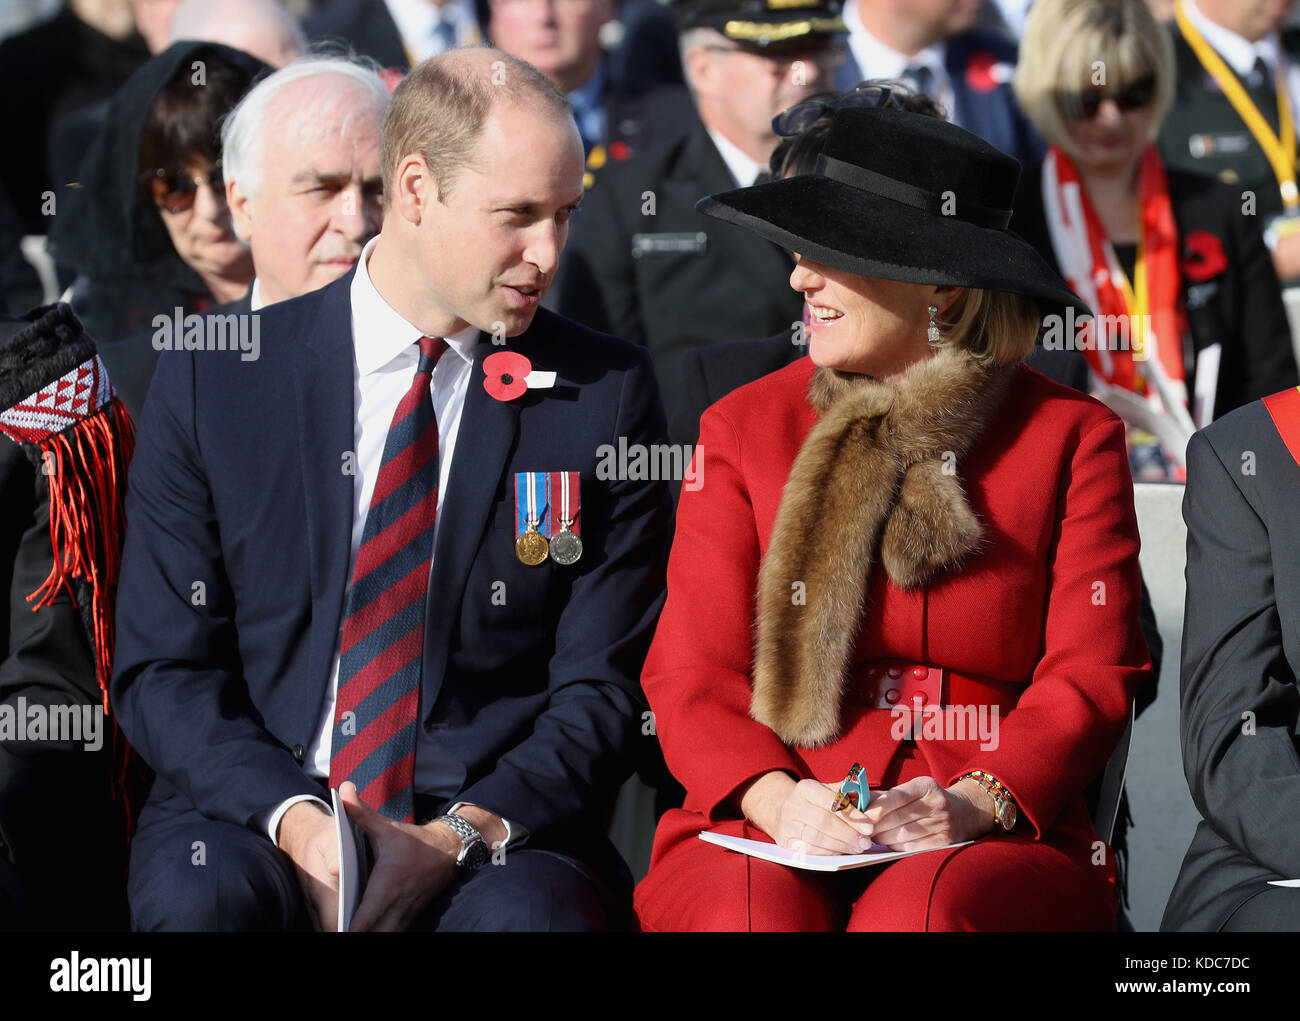 Le duc de Cambridge et la princesse Astrid de Belgique participent à la commémoration nationale néo-zélandaise de la bataille de Passchendaele au cimetière Tyne Cot, en Belgique. Banque D'Images